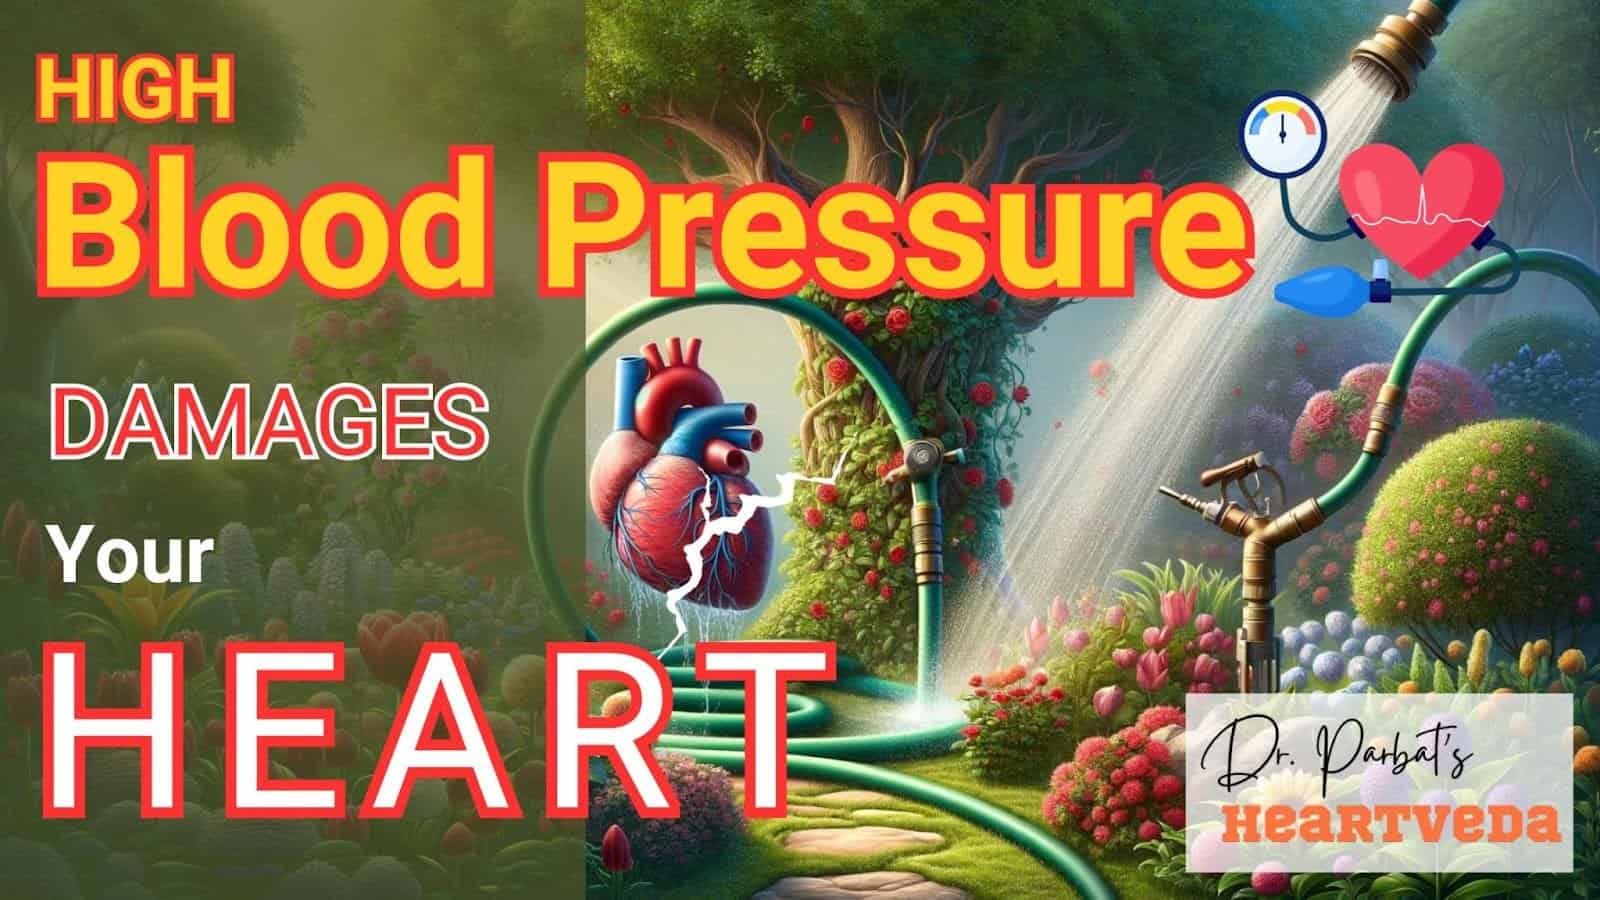 Blog Banner: High Blood Pressure Damages Your Heart - Dr. Biprajit Parbat - HEARTVEDA